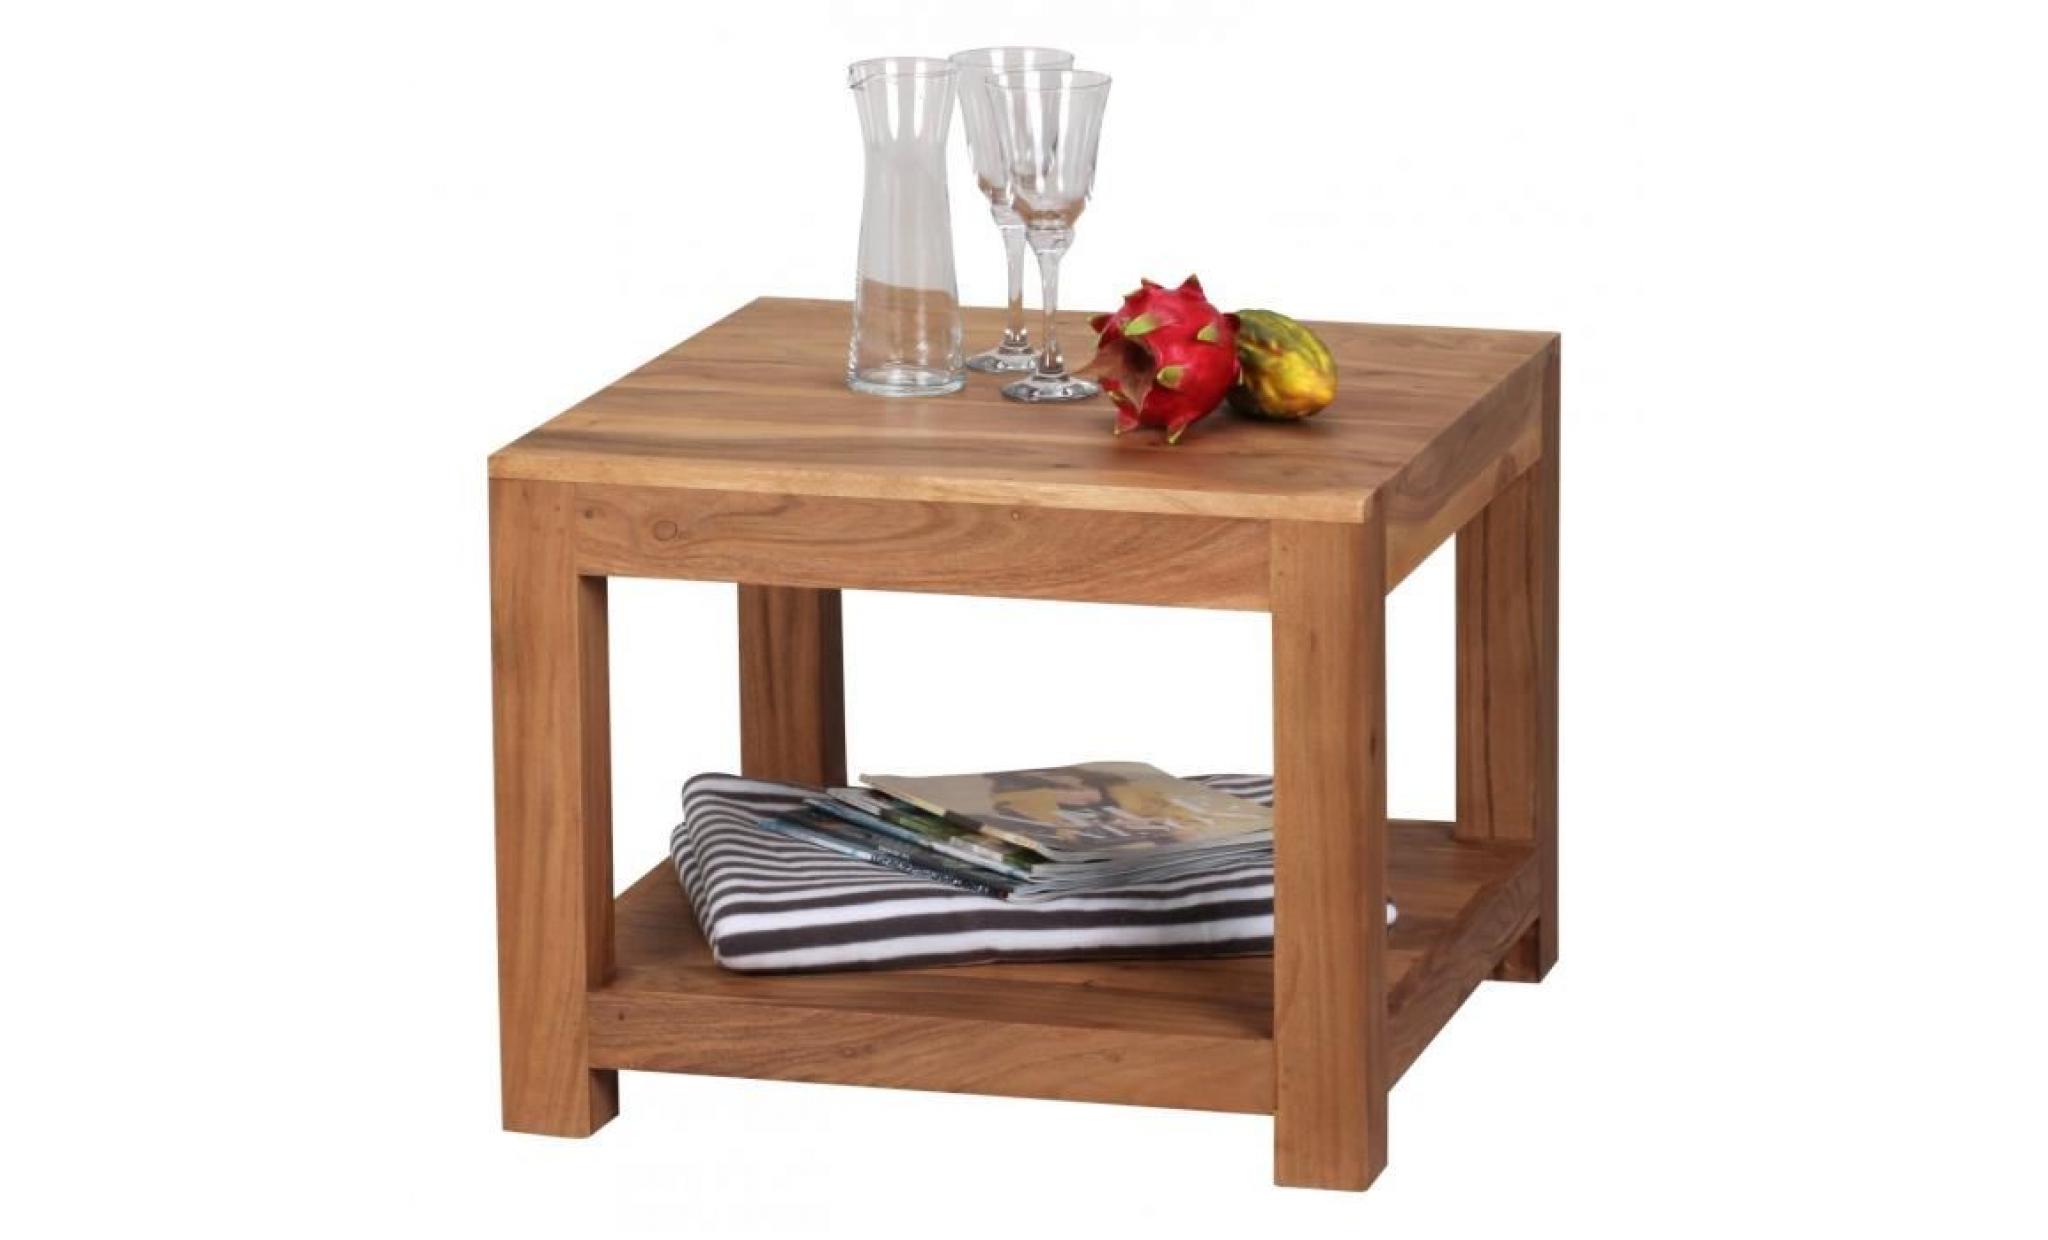 wohnling table basse solide acacia bois 60 x 60 cm table design table de salon de style campagnard brun foncé pas cher